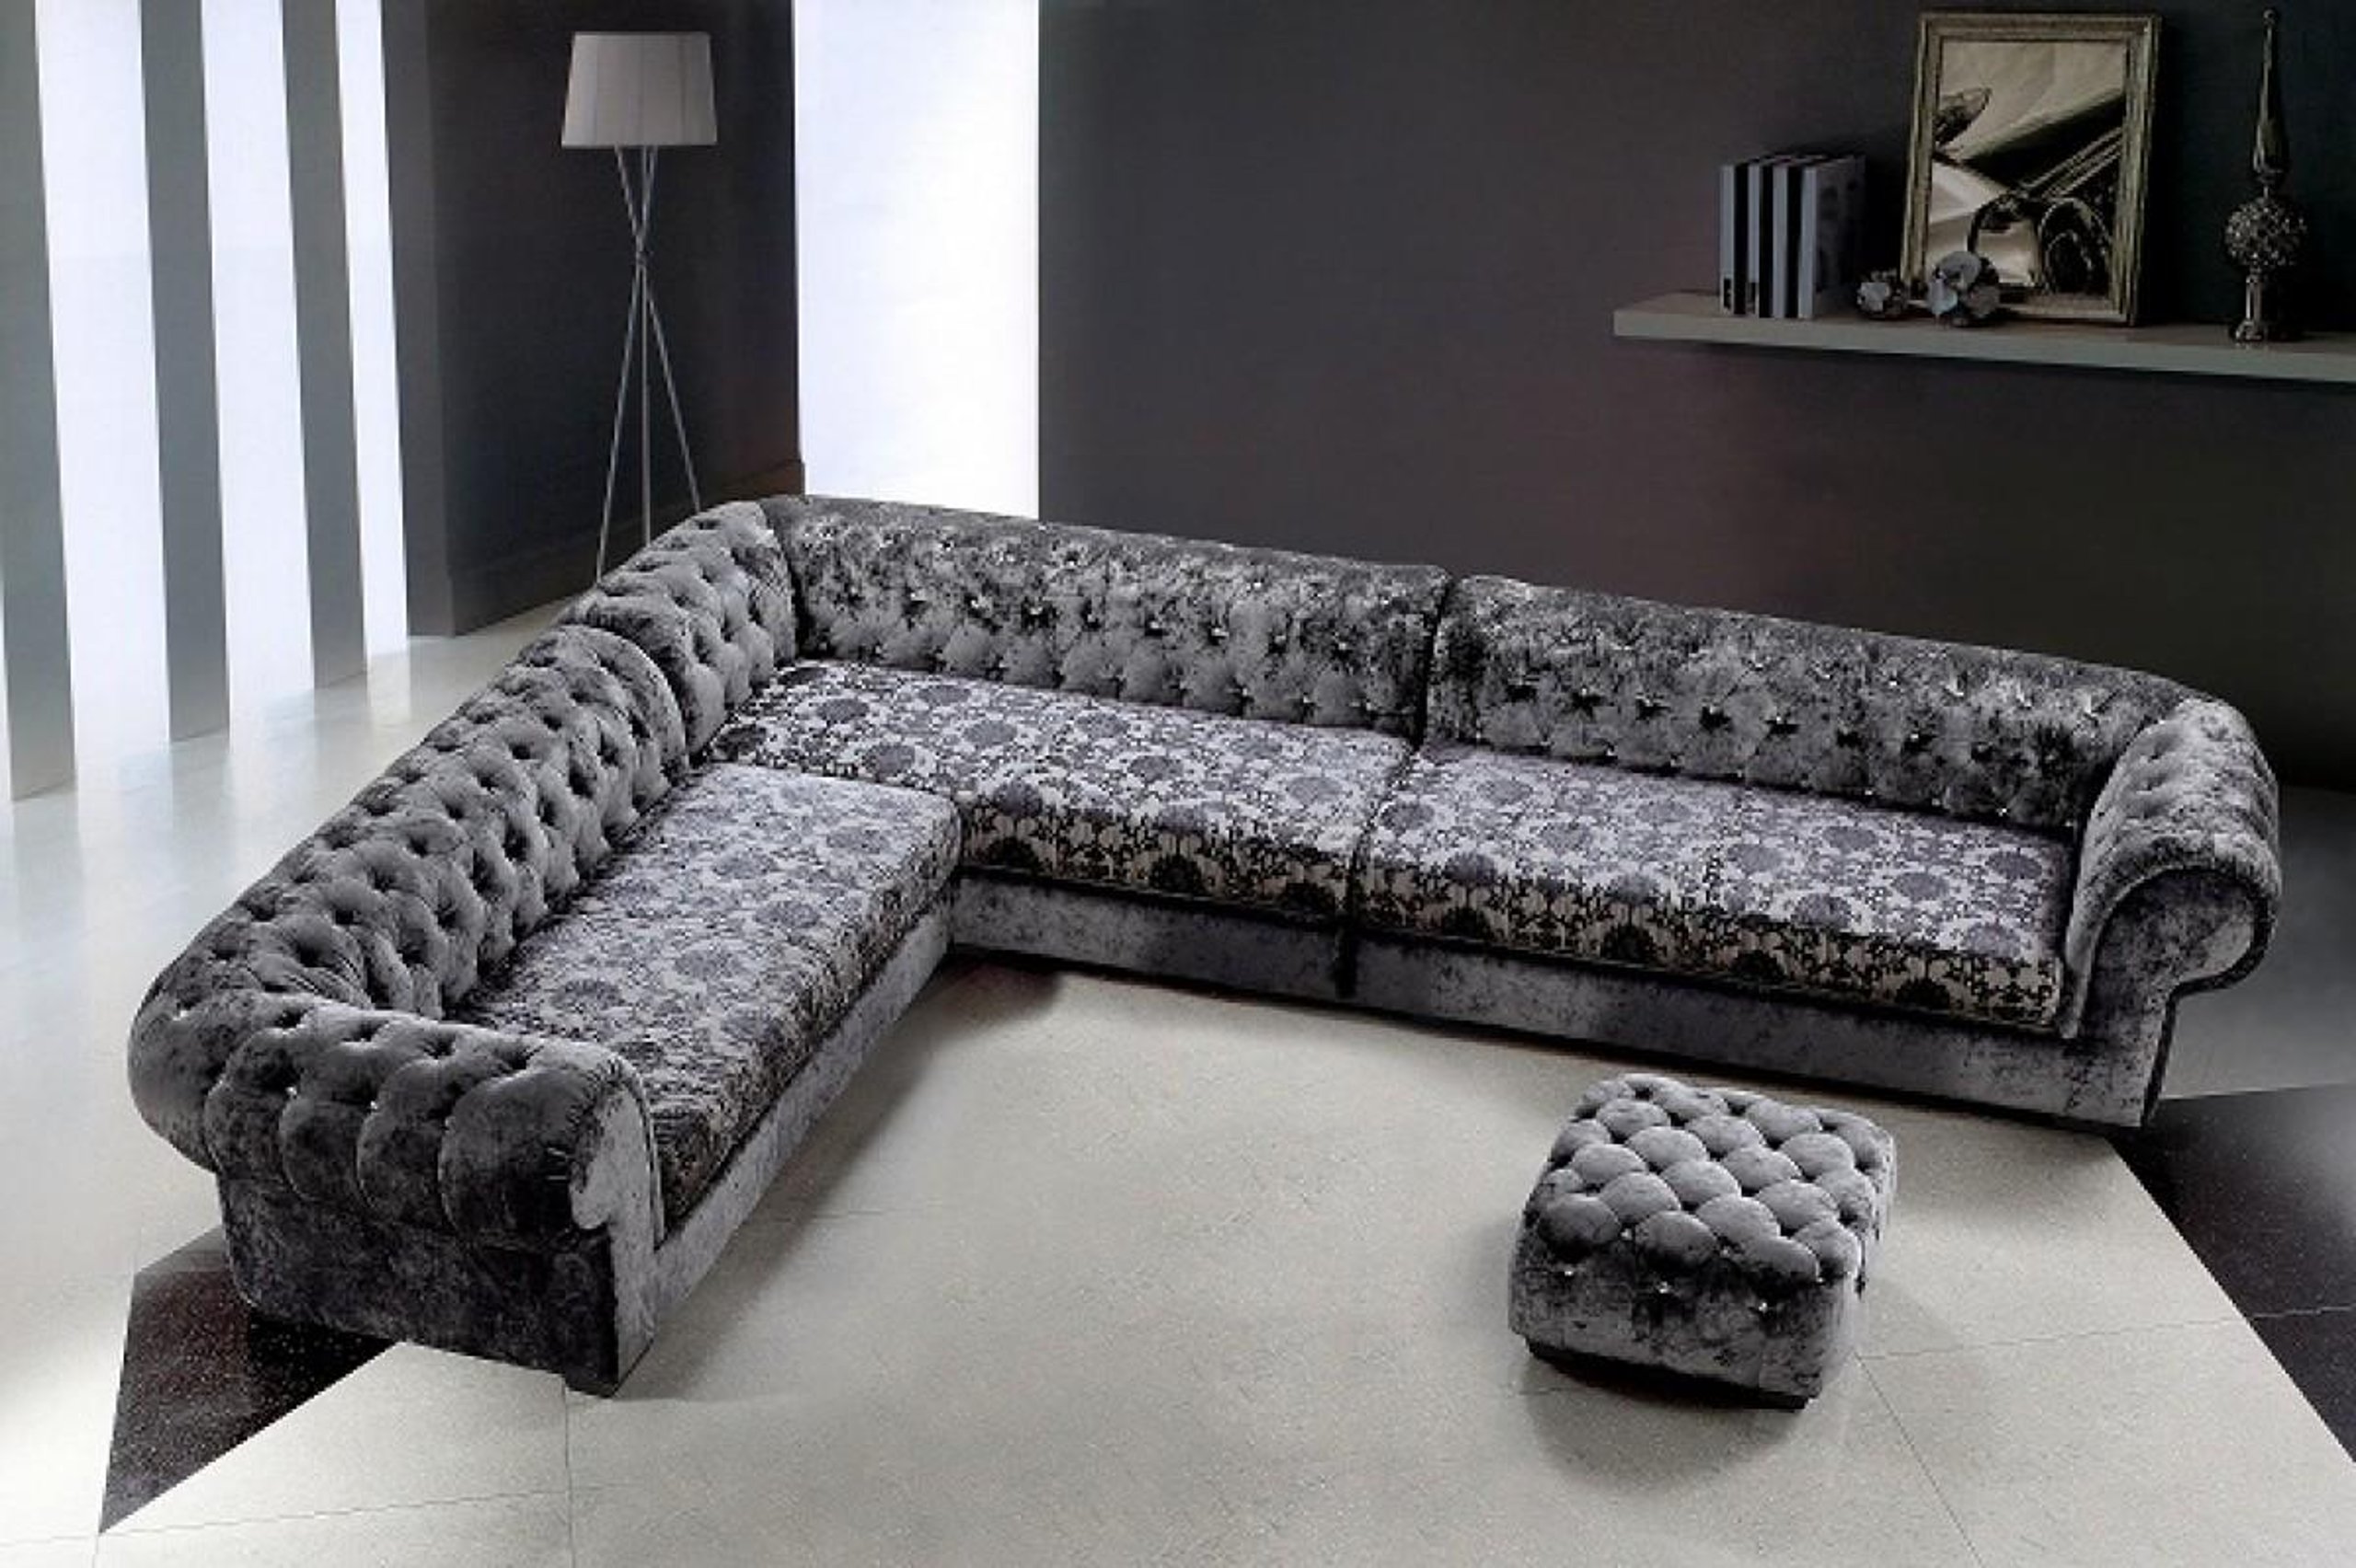 Модели угловых диванов. Огромный диван. Большие диваны. Модели диванов. Дизайнерская мягкая мебель.